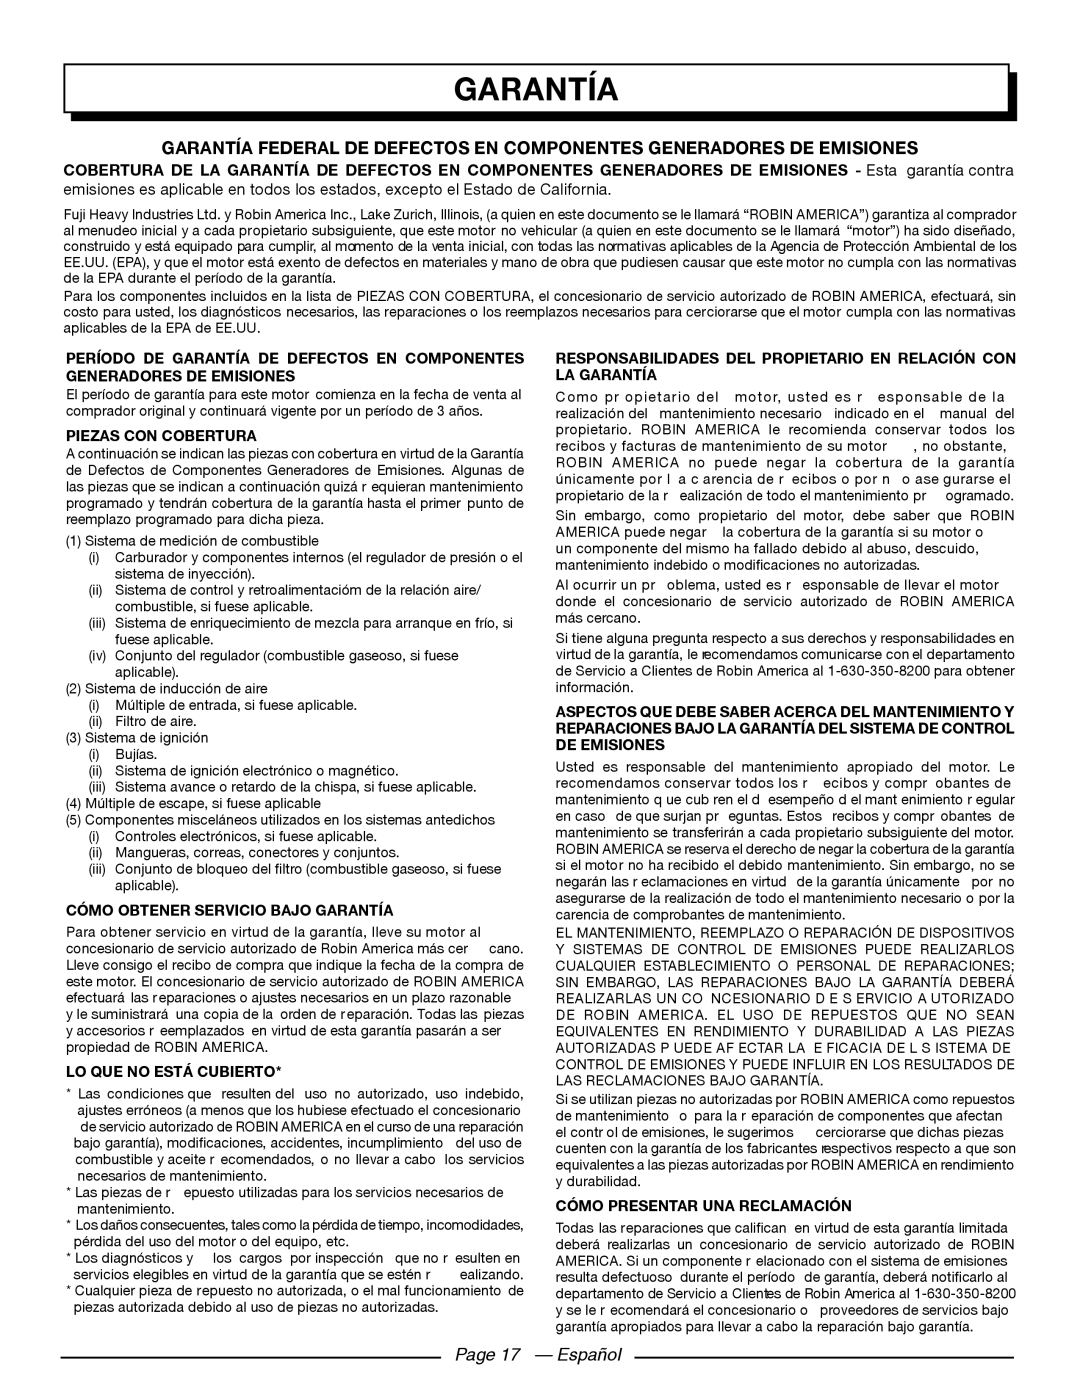 Homelite UT80709, UT80911 Garantía Federal De Defectos En Componentes Generadores De Emisiones, Page 17 - Español 